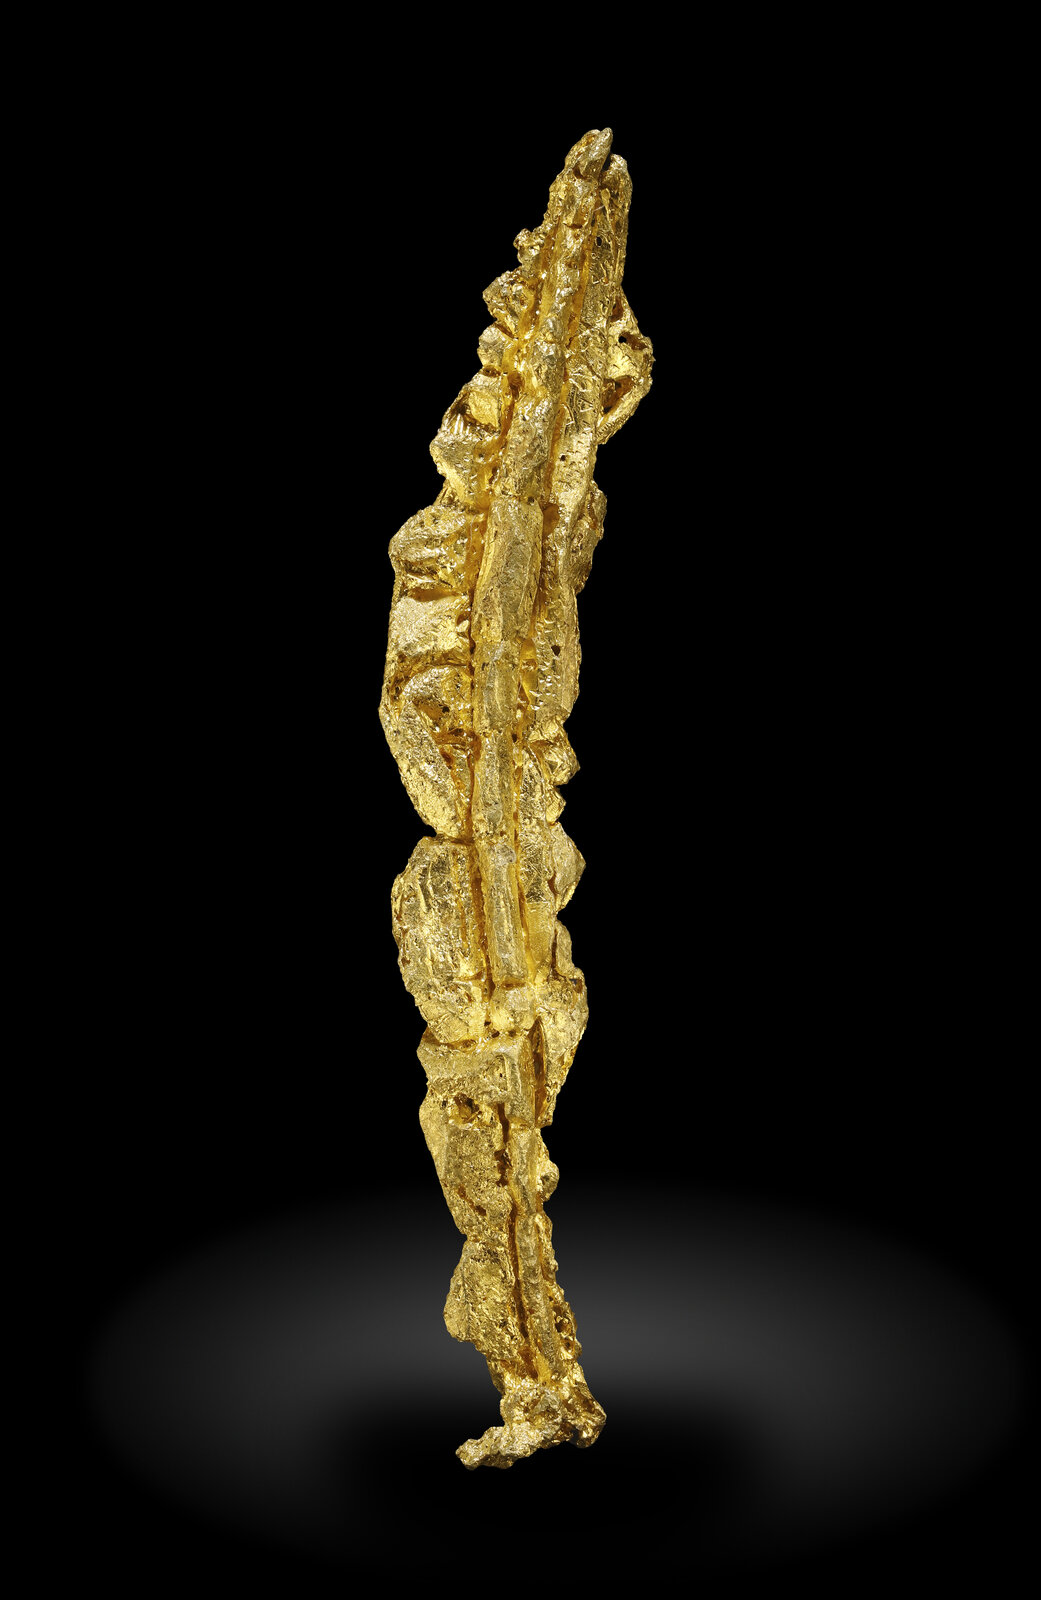 specimens/s_imagesAP4/Gold-EXR72AP4_7874_f.jpg